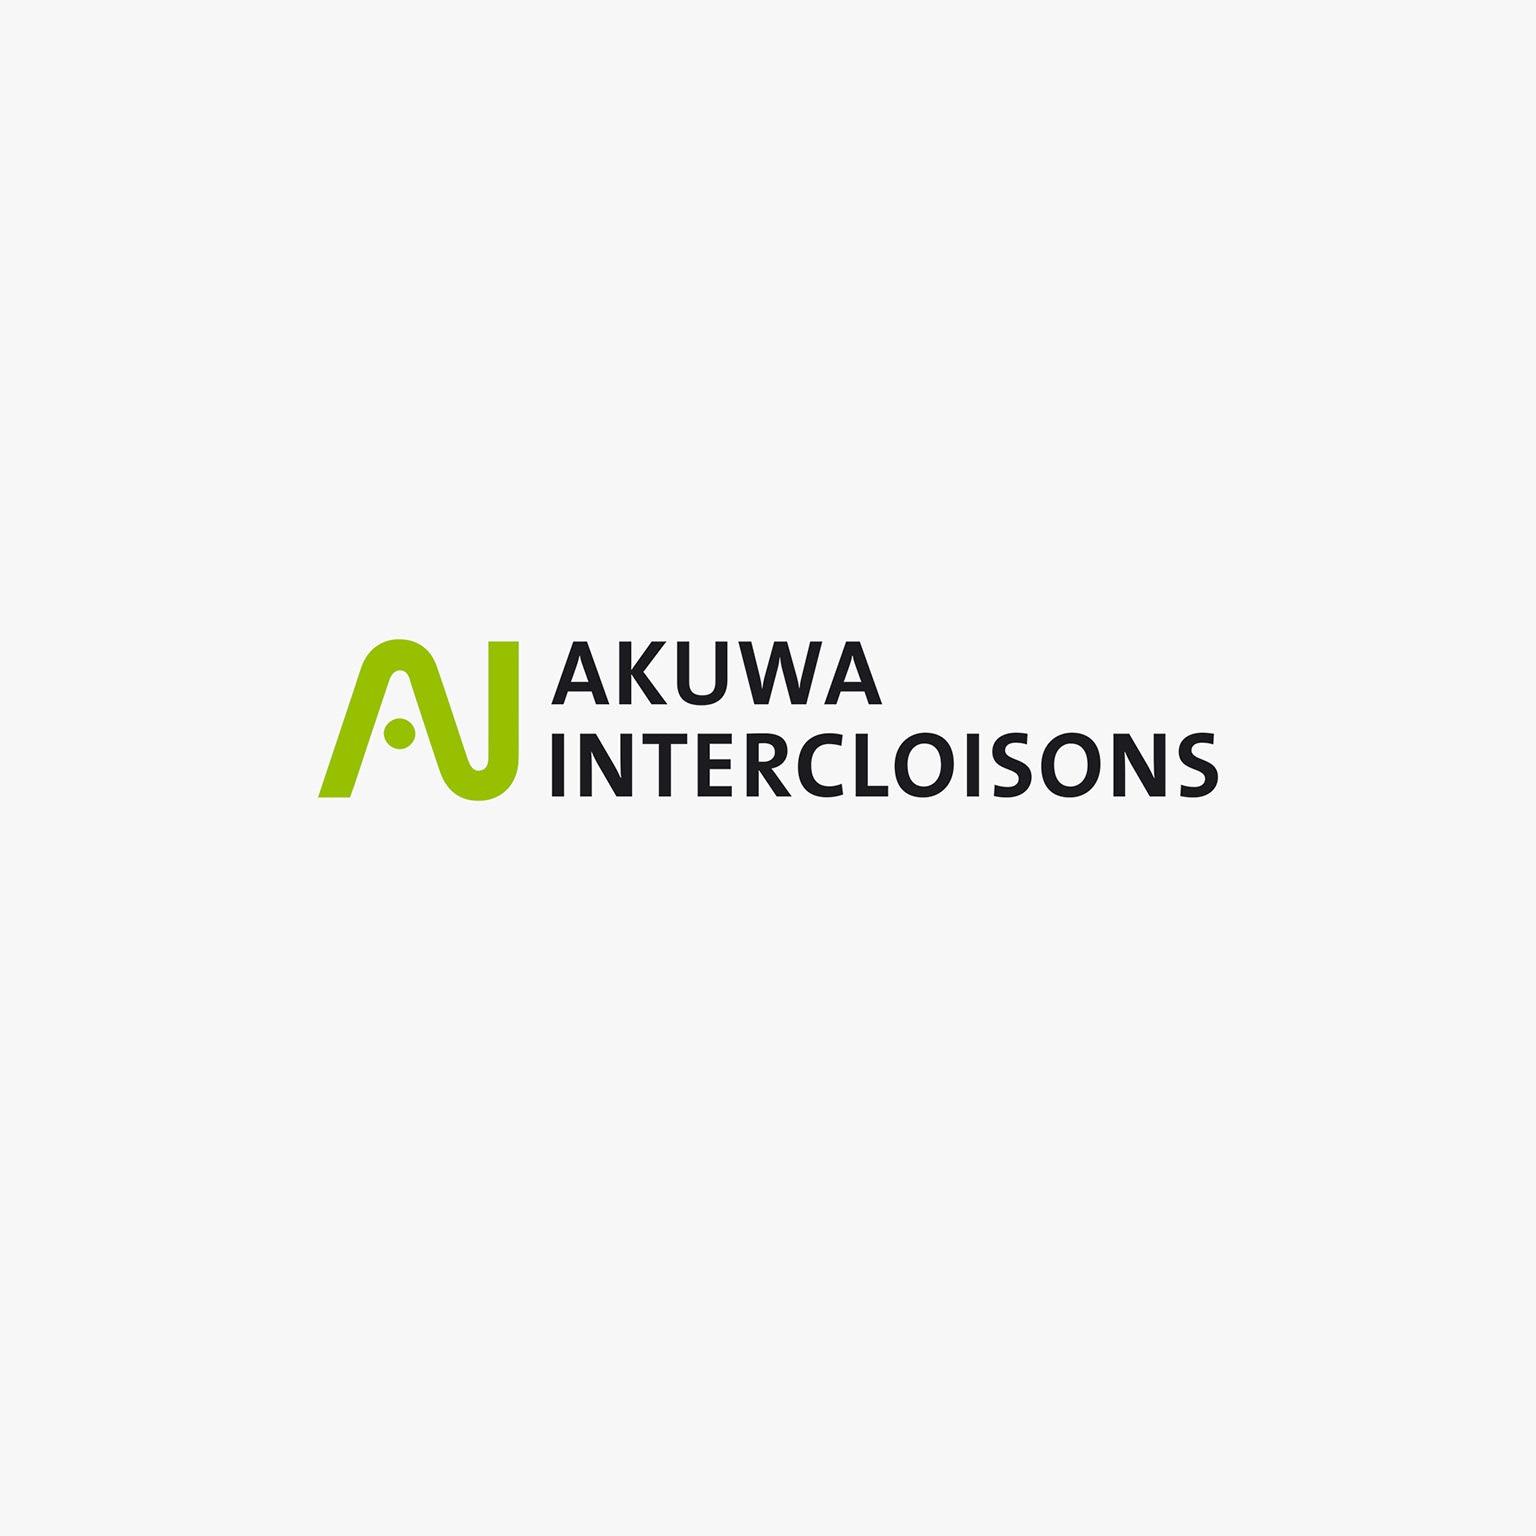 AKUWA INTERCLOISONS